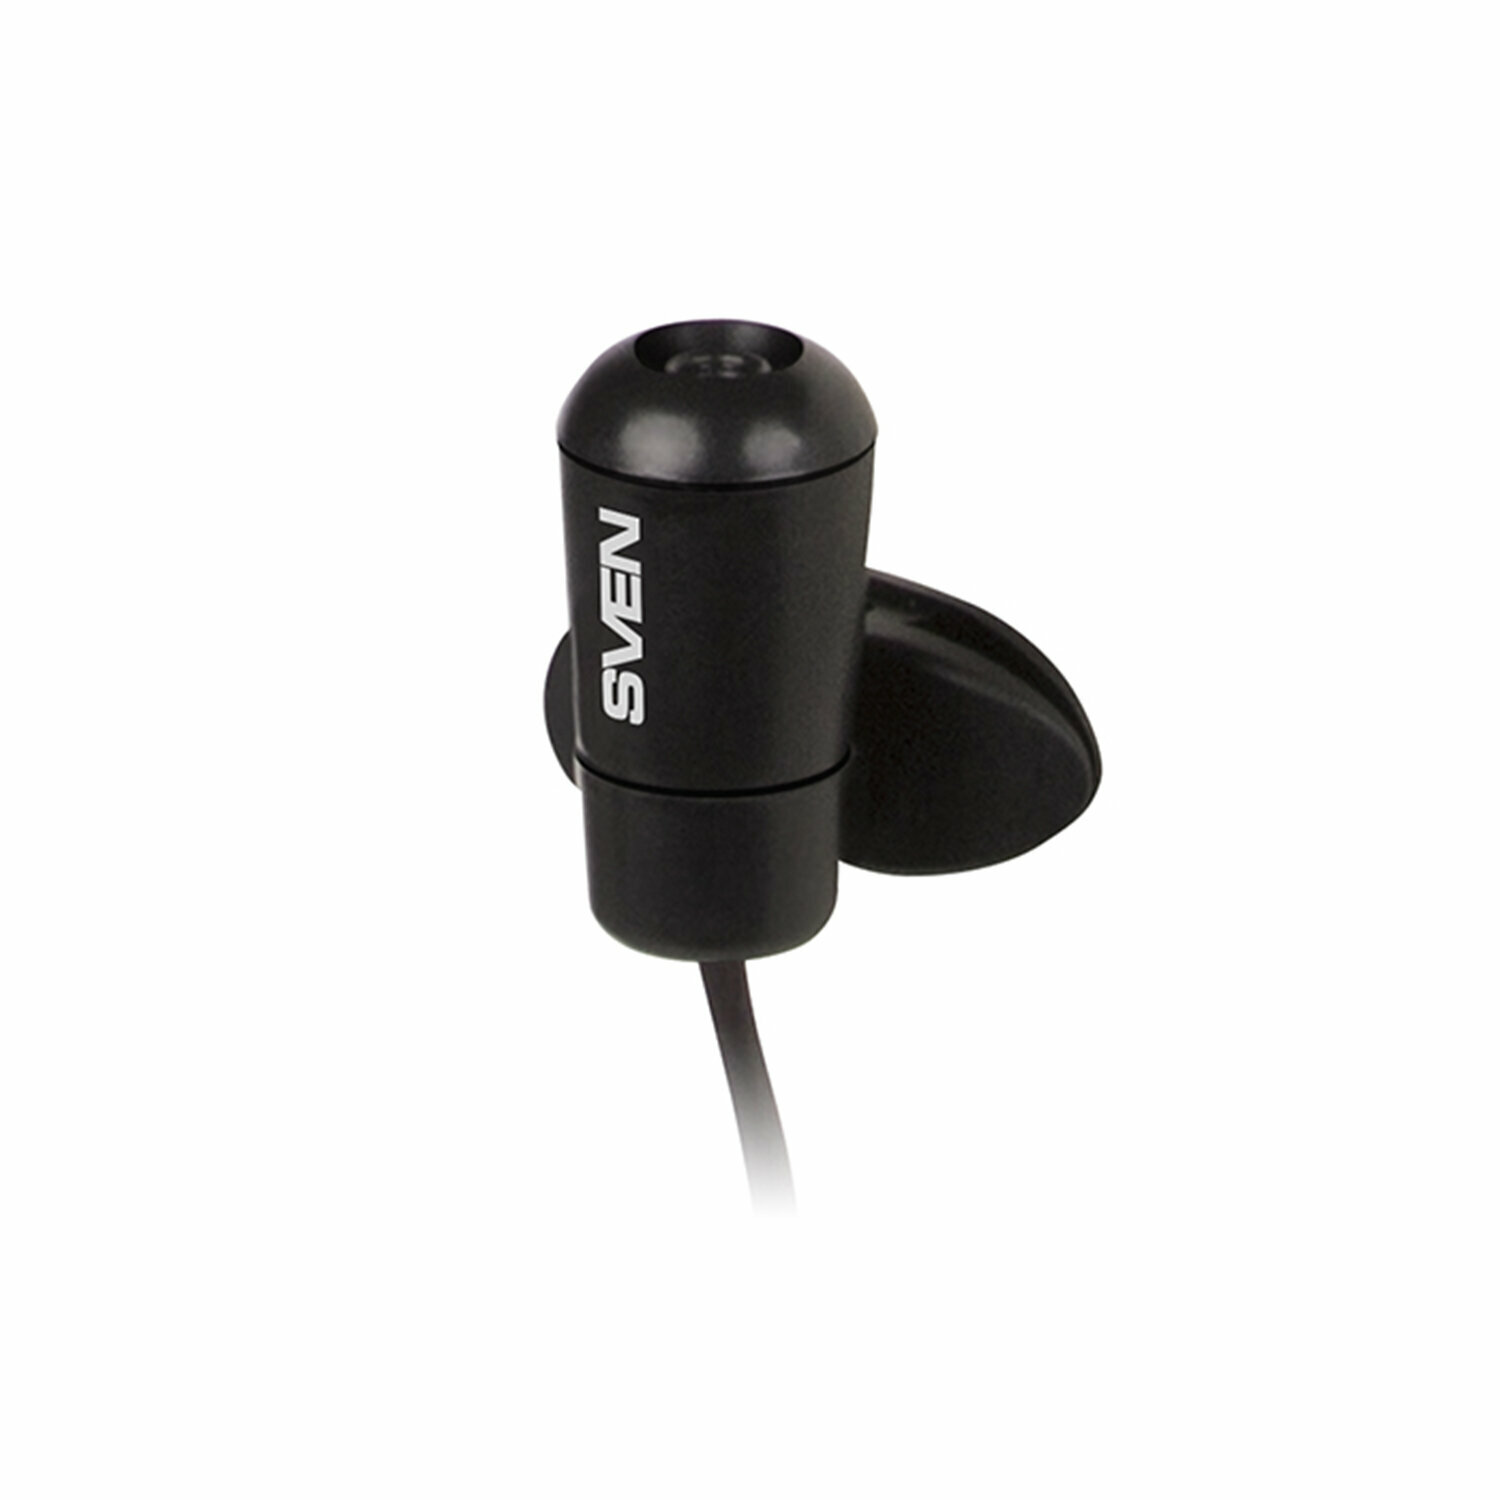 Микрофон-клипса SVEN MK-170, кабель 1,8 м, 58 дБ, пластик, черный, SV-014858 3 шт .